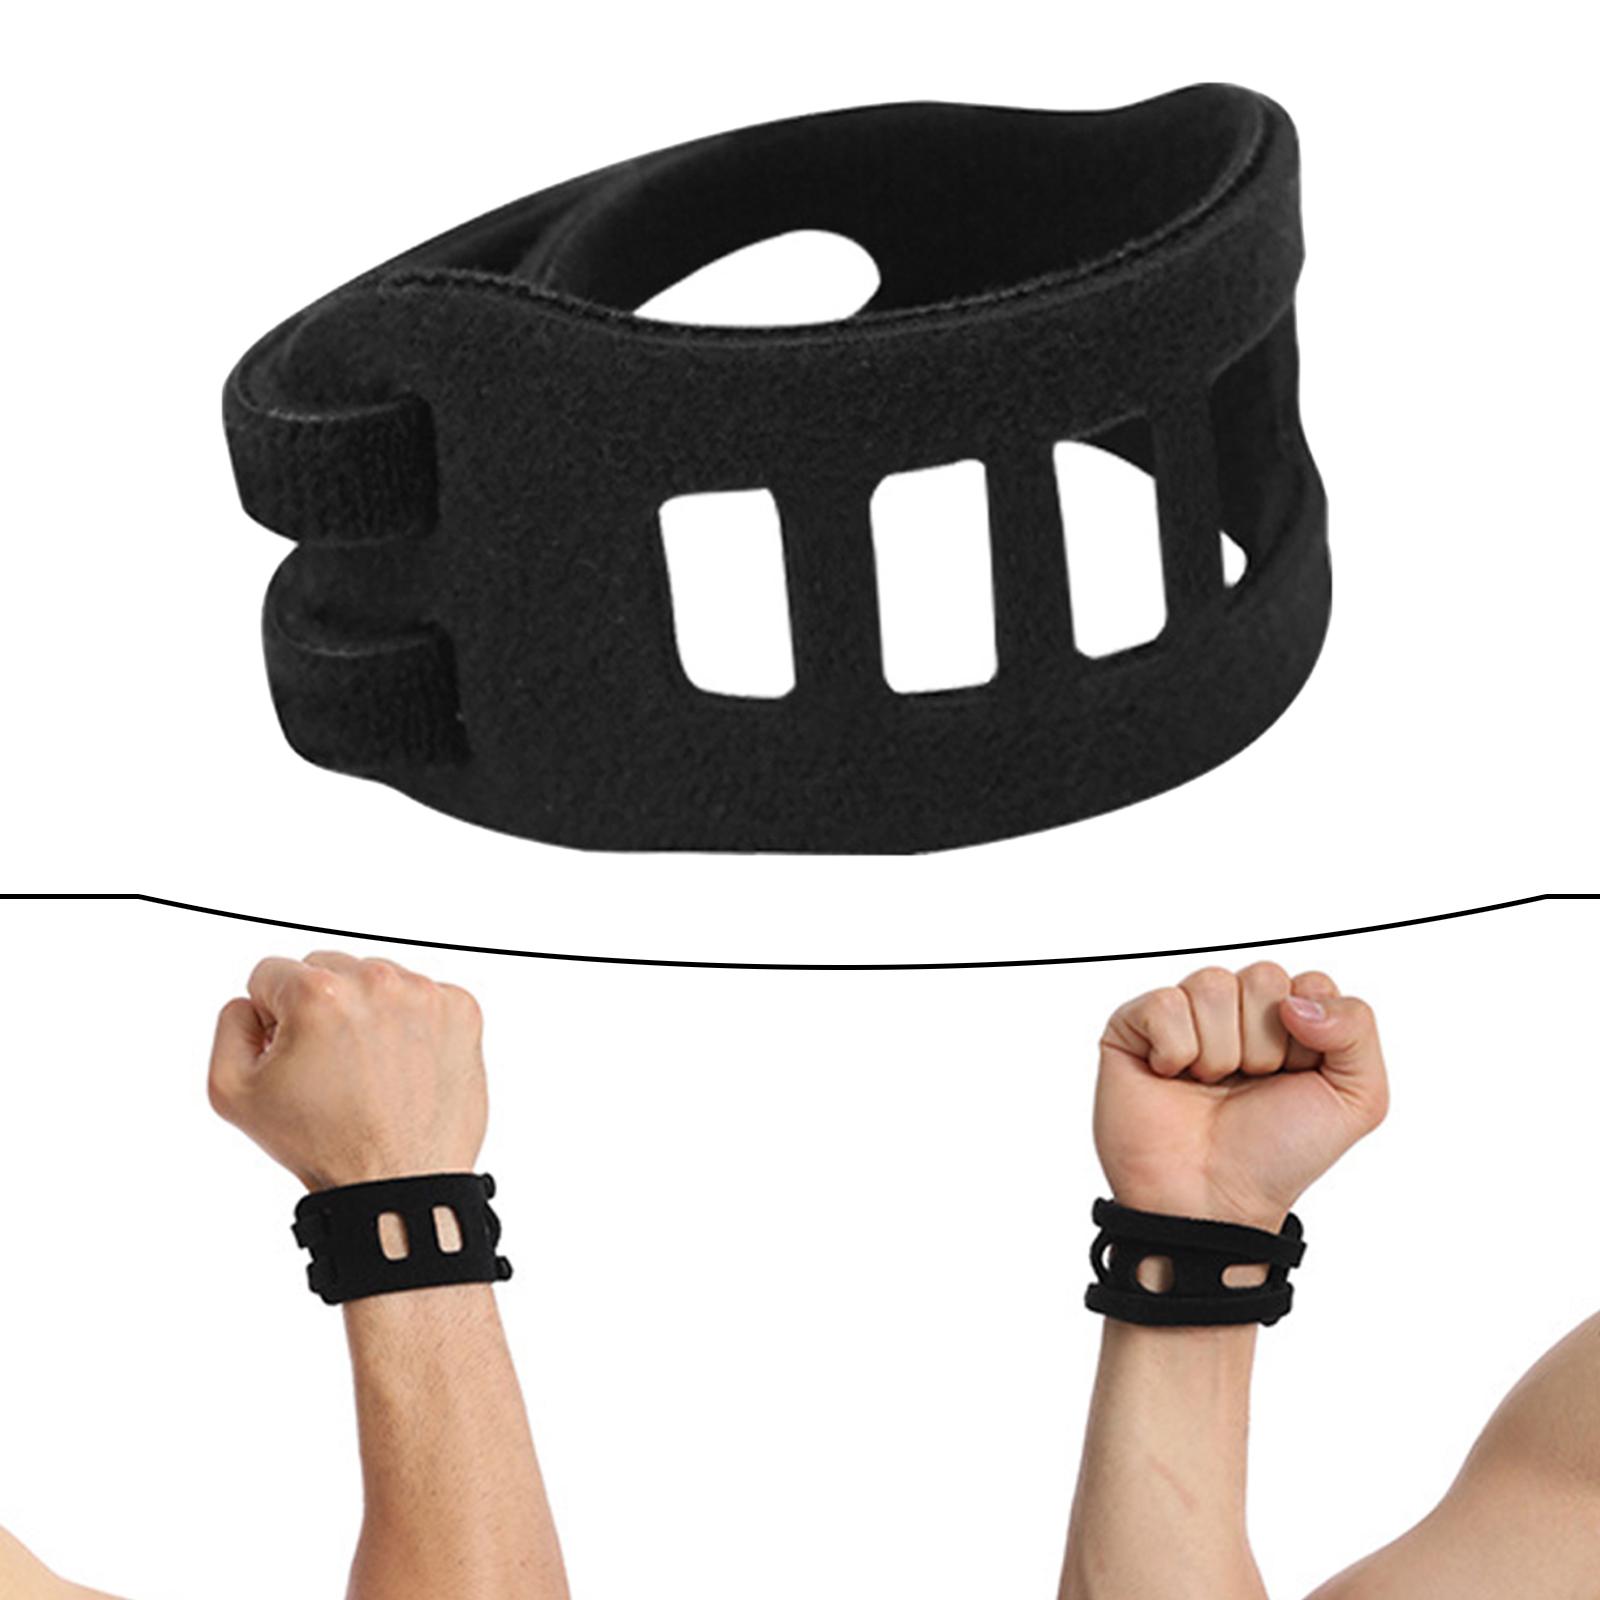 Wrist Brace for Tfcc Tears Soft Portable for Basketball Yoga Women Men